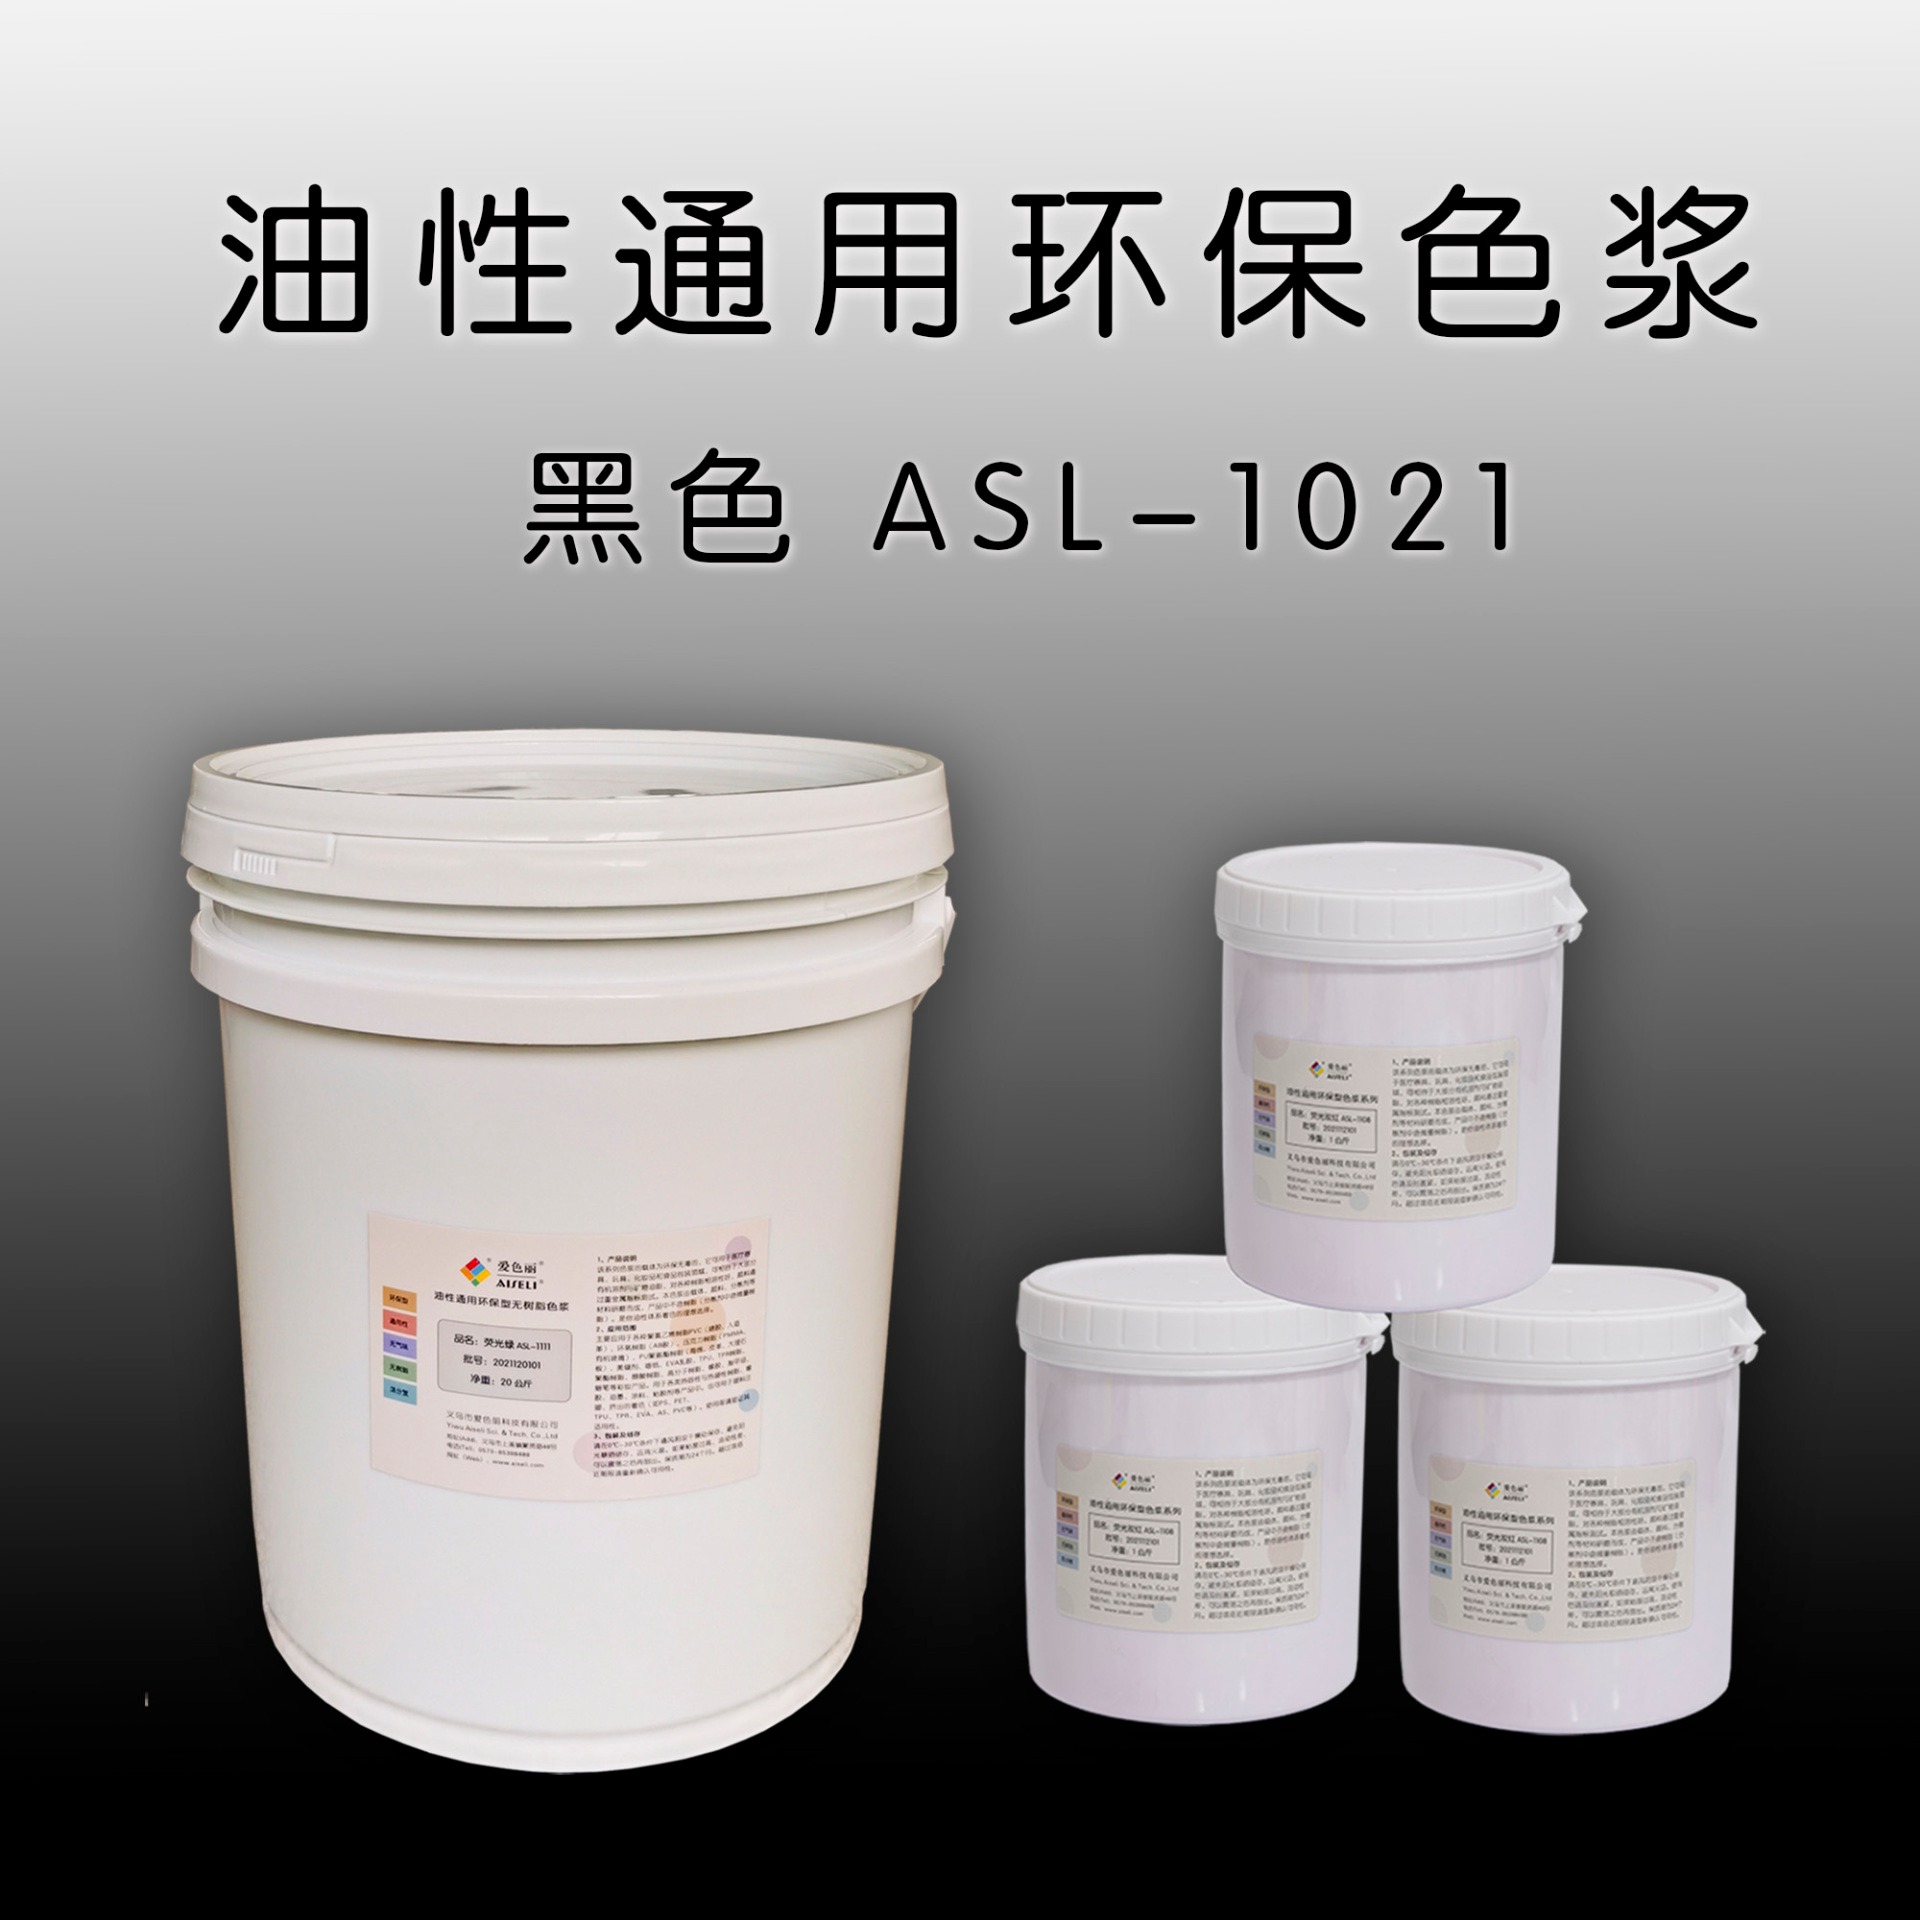 油性通用色浆黑色 ASL-1021 PVC PU UV TPR EVA AB胶色浆 环氧树脂、聚氯乙烯、光固化油墨